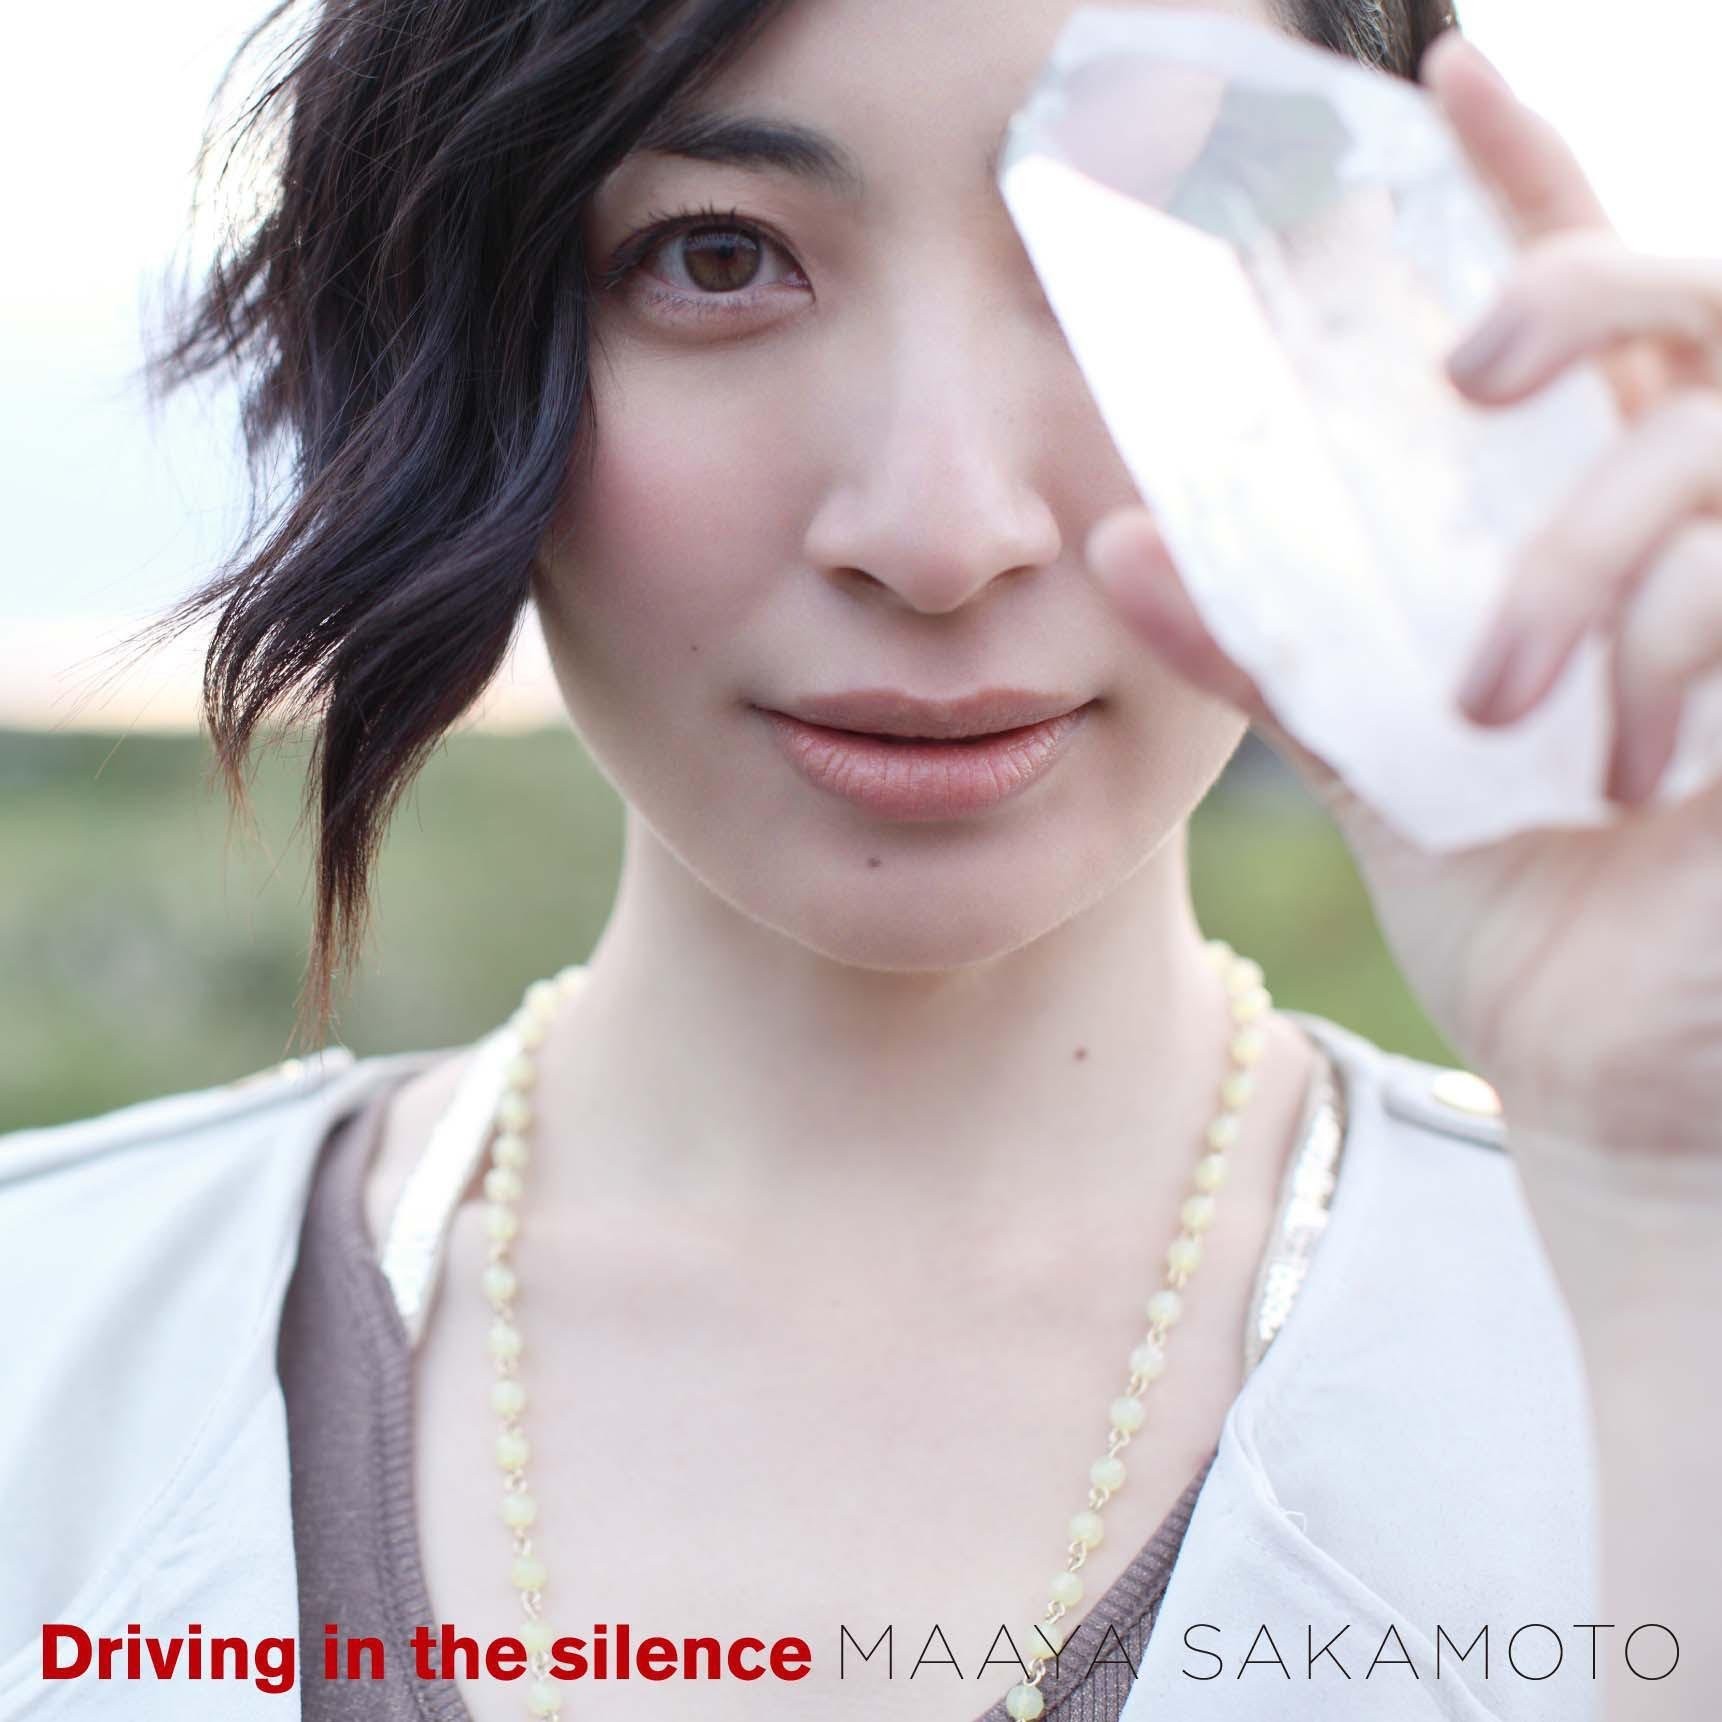 坂本真綾 (Maaya Sakamoto) - Driving in the silence [Mora FLAC 24bit/96kHz]